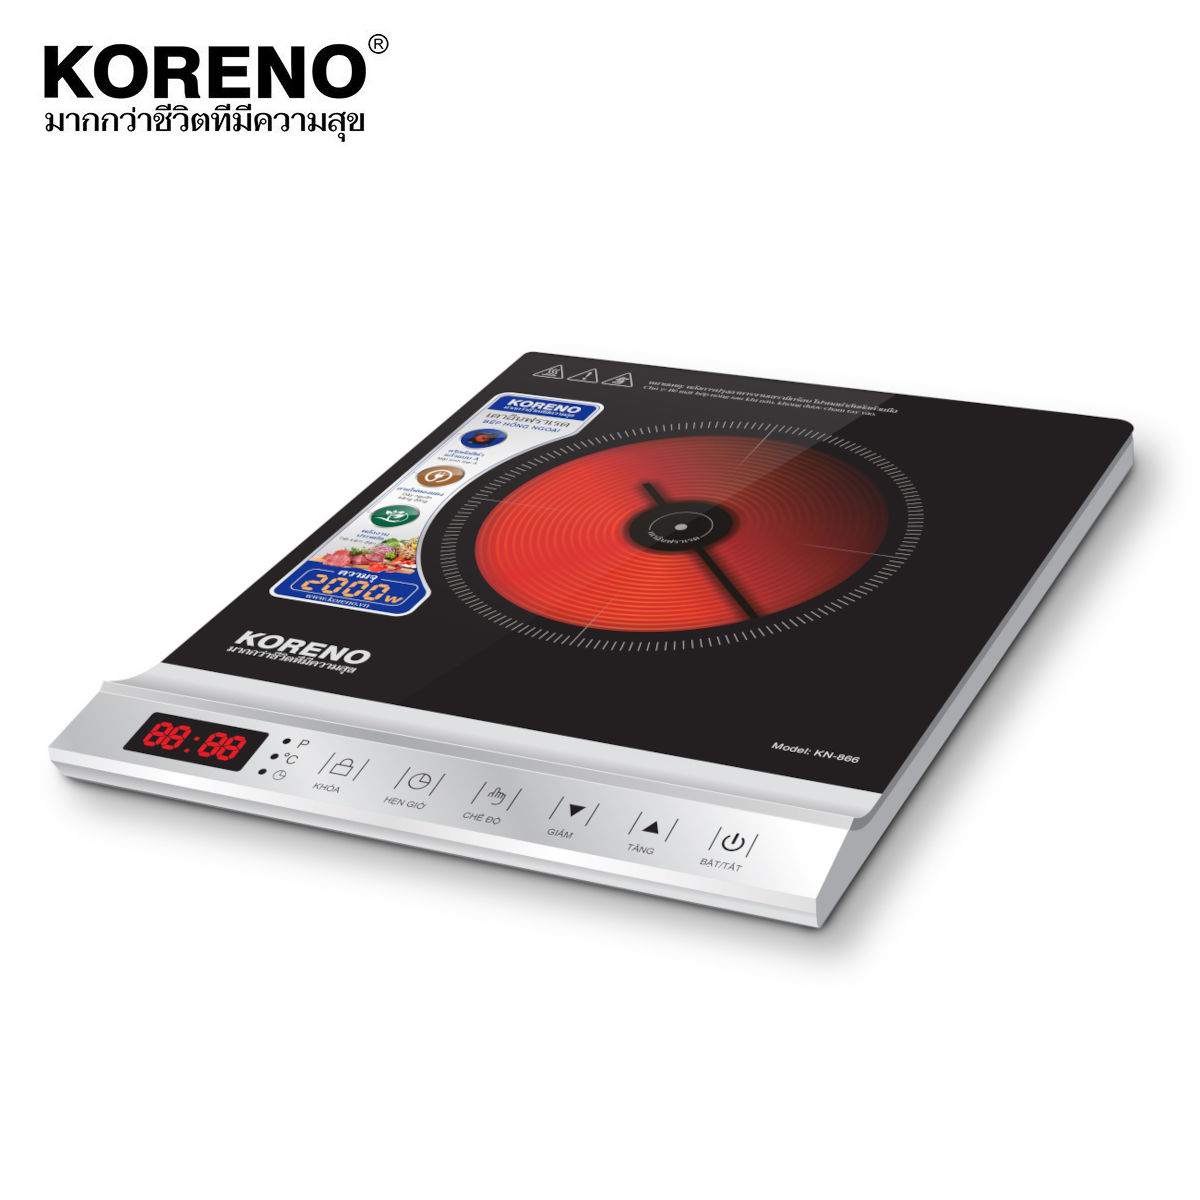 Bếp hồng ngoại Koreno KN-866 công suất 2000W tặng kèm vỉ nướng